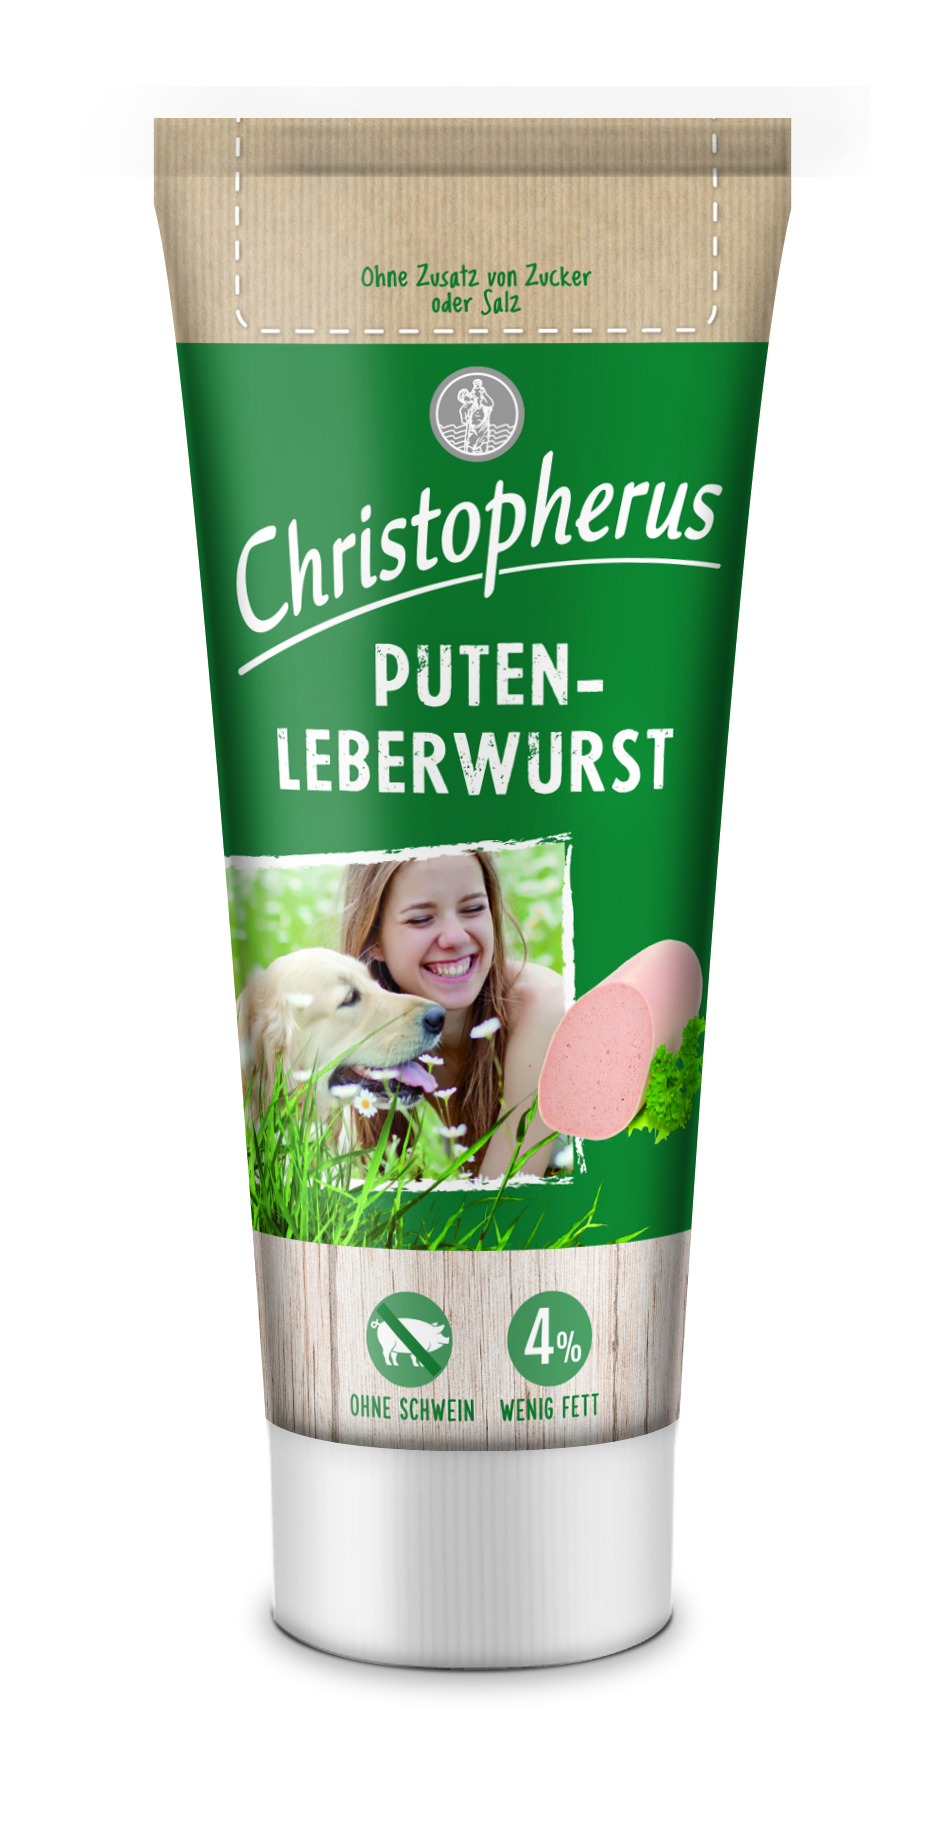 Christopherus Snack Putenleberwurst 75g